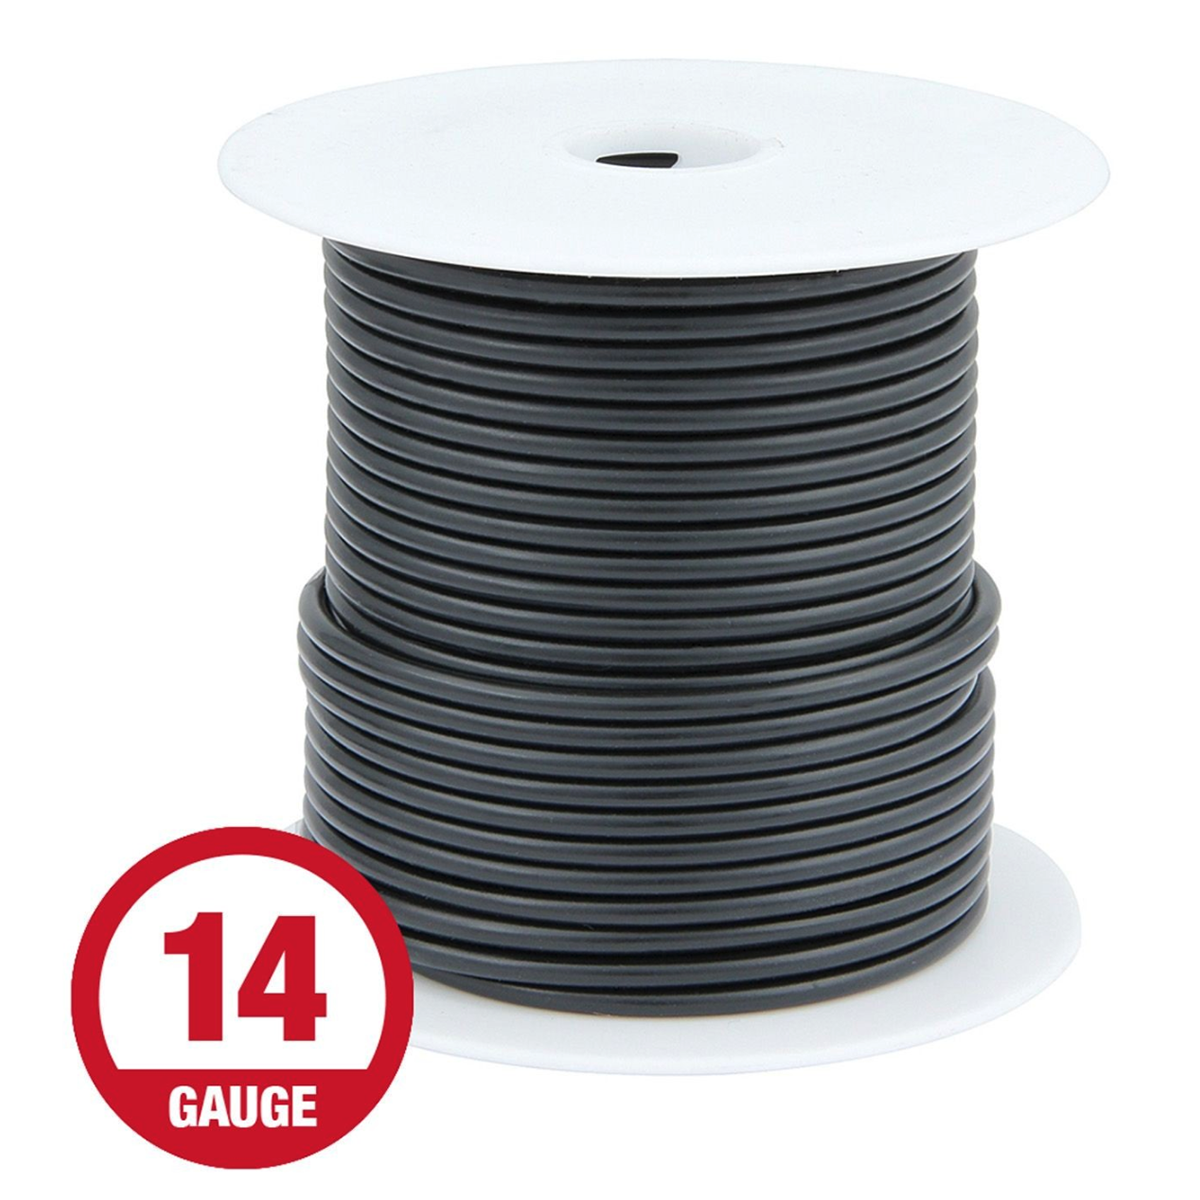 100Ft, 14 Gauge Wire Roll, Black